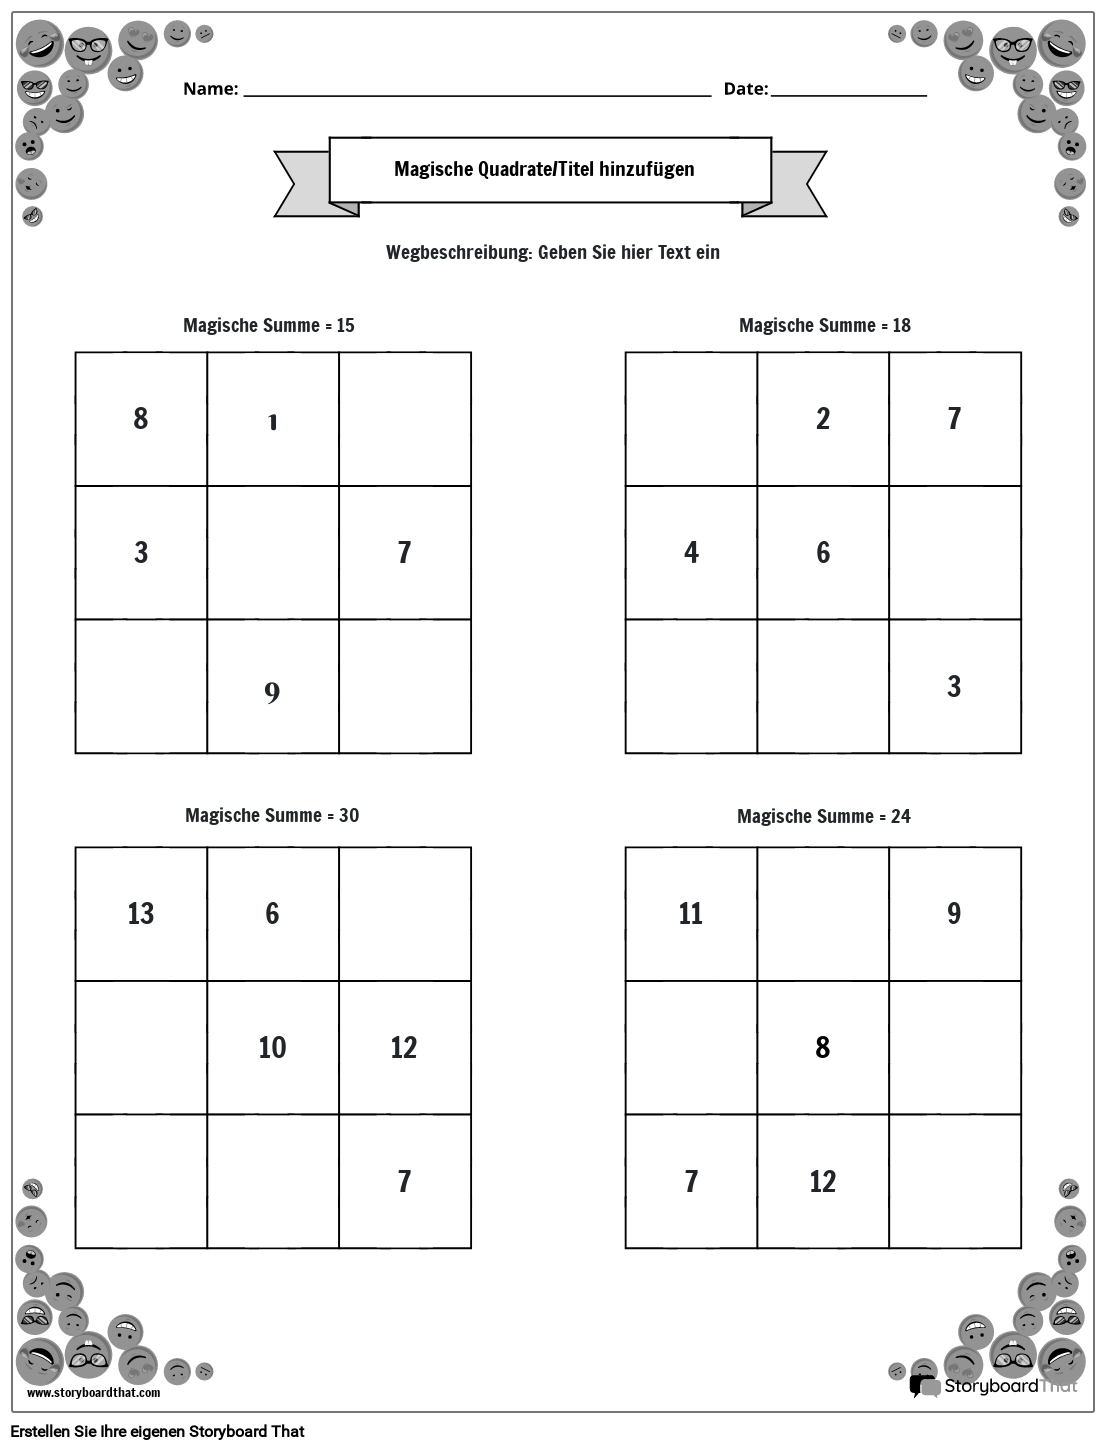 3x3 Magic Squares-Arbeitsblatt mit Smiley-Rand (schwarz und weiß)